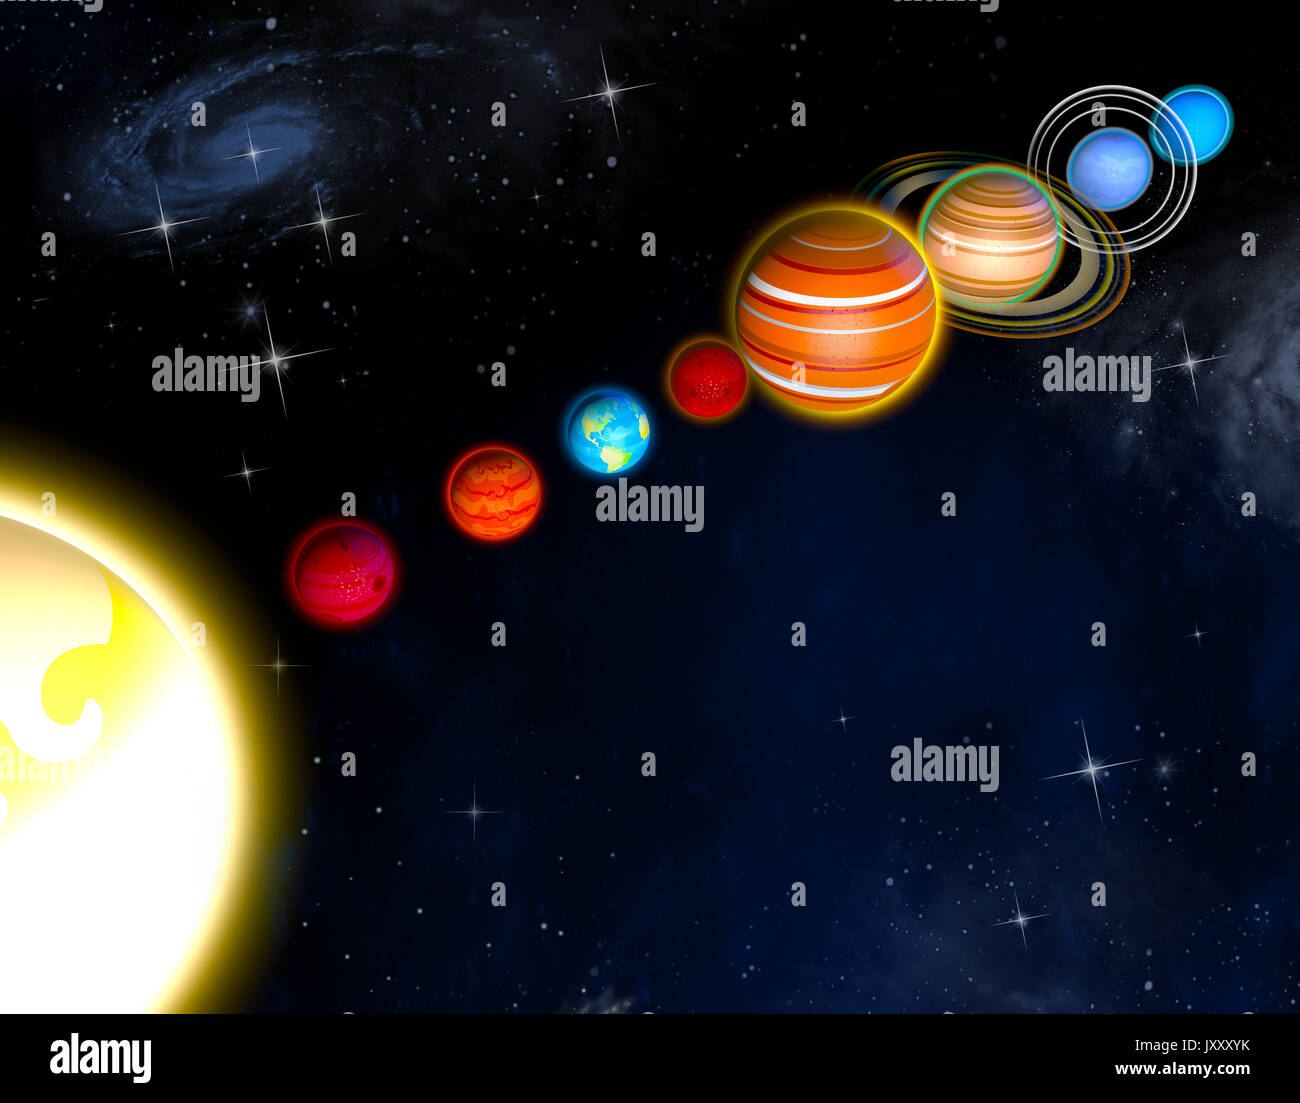 https://c8.alamy.com/compes/jxxxyk/diametro-de-planetas-del-sistema-solar-y-los-tamanos-de-las-orbitas-libro-para-ninos-dibujos-jxxxyk.jpg